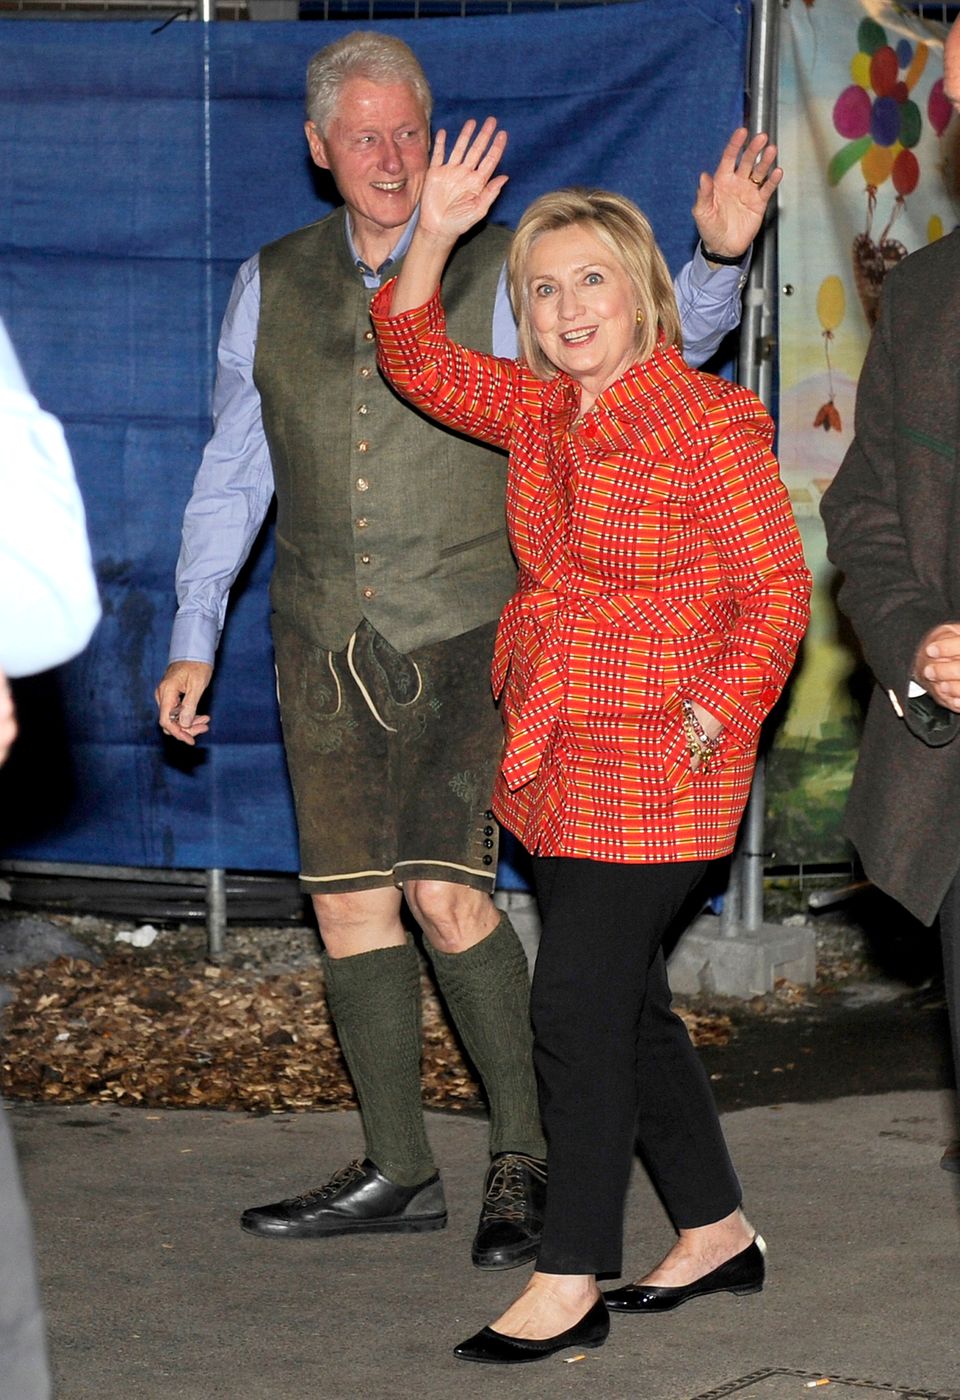 Ja, Sie sehen richtig: Der Mann in Tracht ist der frühere US-Präsident Bill Clinton. Der 72-Jährige kam gemeinsam mit seiner Frau Hillary zur Wiesn. Ein Dirndl mochte die 70-Jährige aber offenbar nicht tragen.